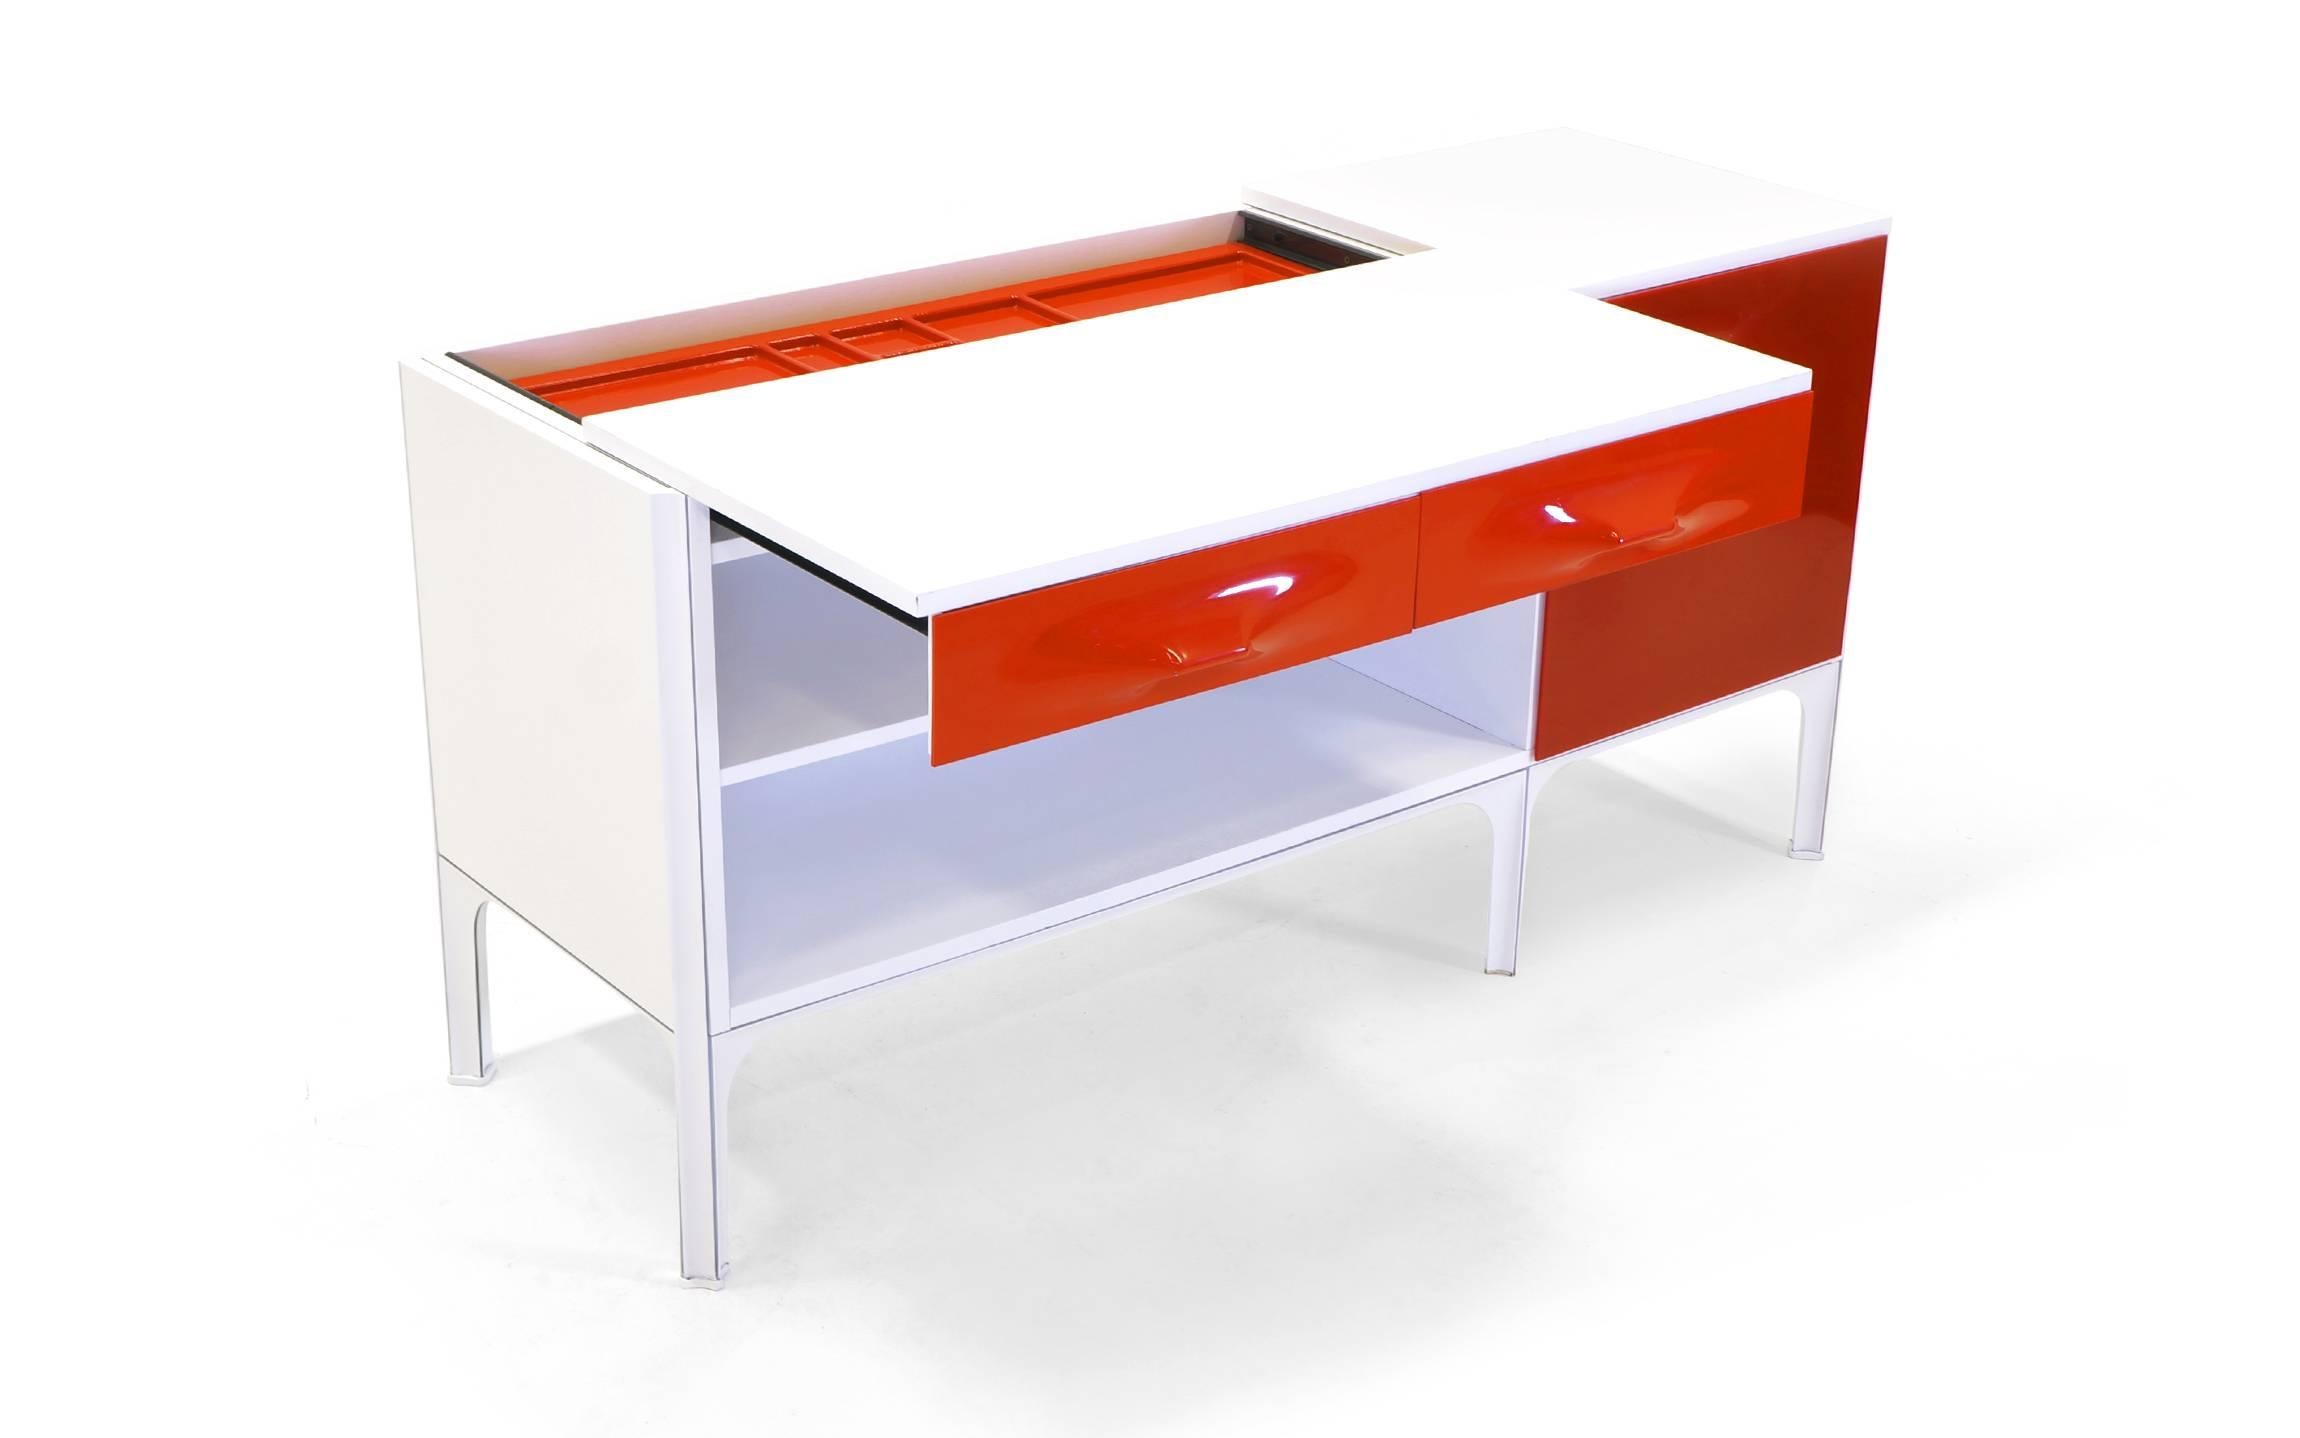 Seltener Raymond Loewy DF2000 Schreibtisch in Rot, Orange und Weiß. Auf den Fotos sehen Sie, wie die Tischplatte nach vorne gleitet, um Platz für einen Stuhl zu schaffen und Stauraum zu bieten. Die Tür aus rotem Kunststoff gibt den Blick frei auf